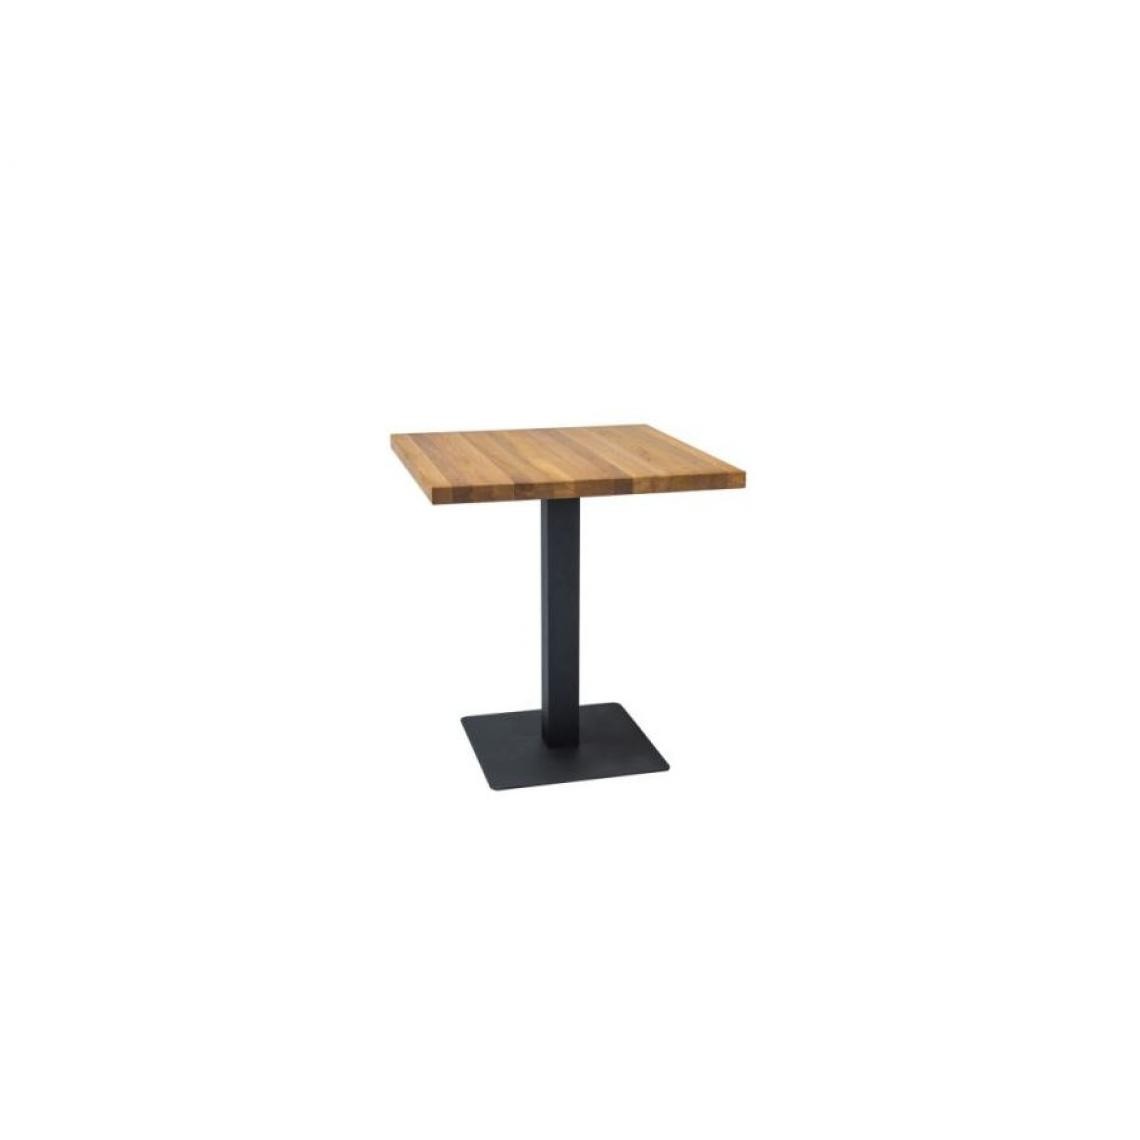 Hucoco - PUDIO - Table de style loft avec un piètement en métal - 80x80x76 cm - Plateau carré en bois massif - Table fixe - Chêne - Tables à manger